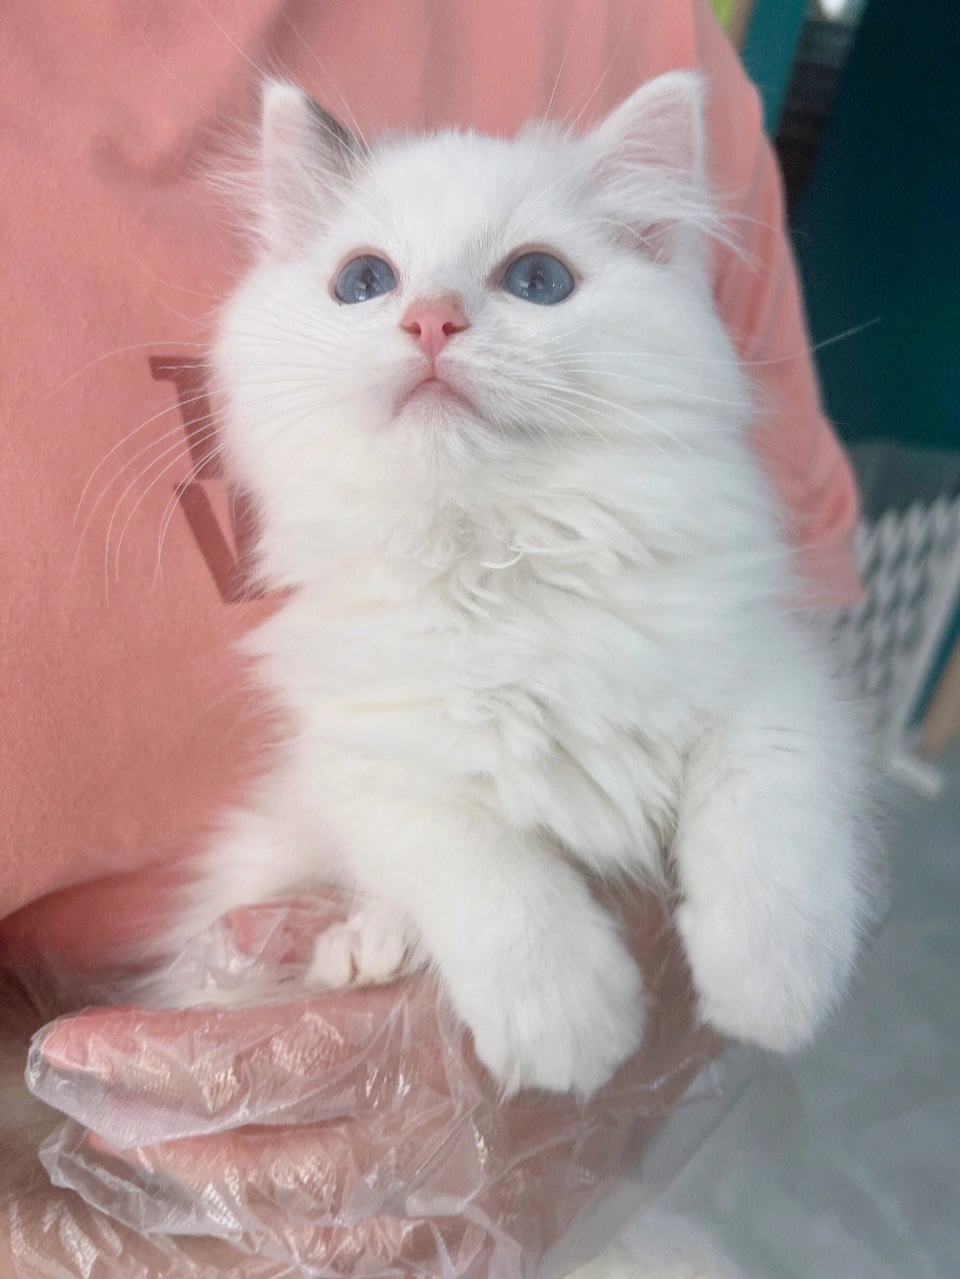 梵色布偶猫白耳图片